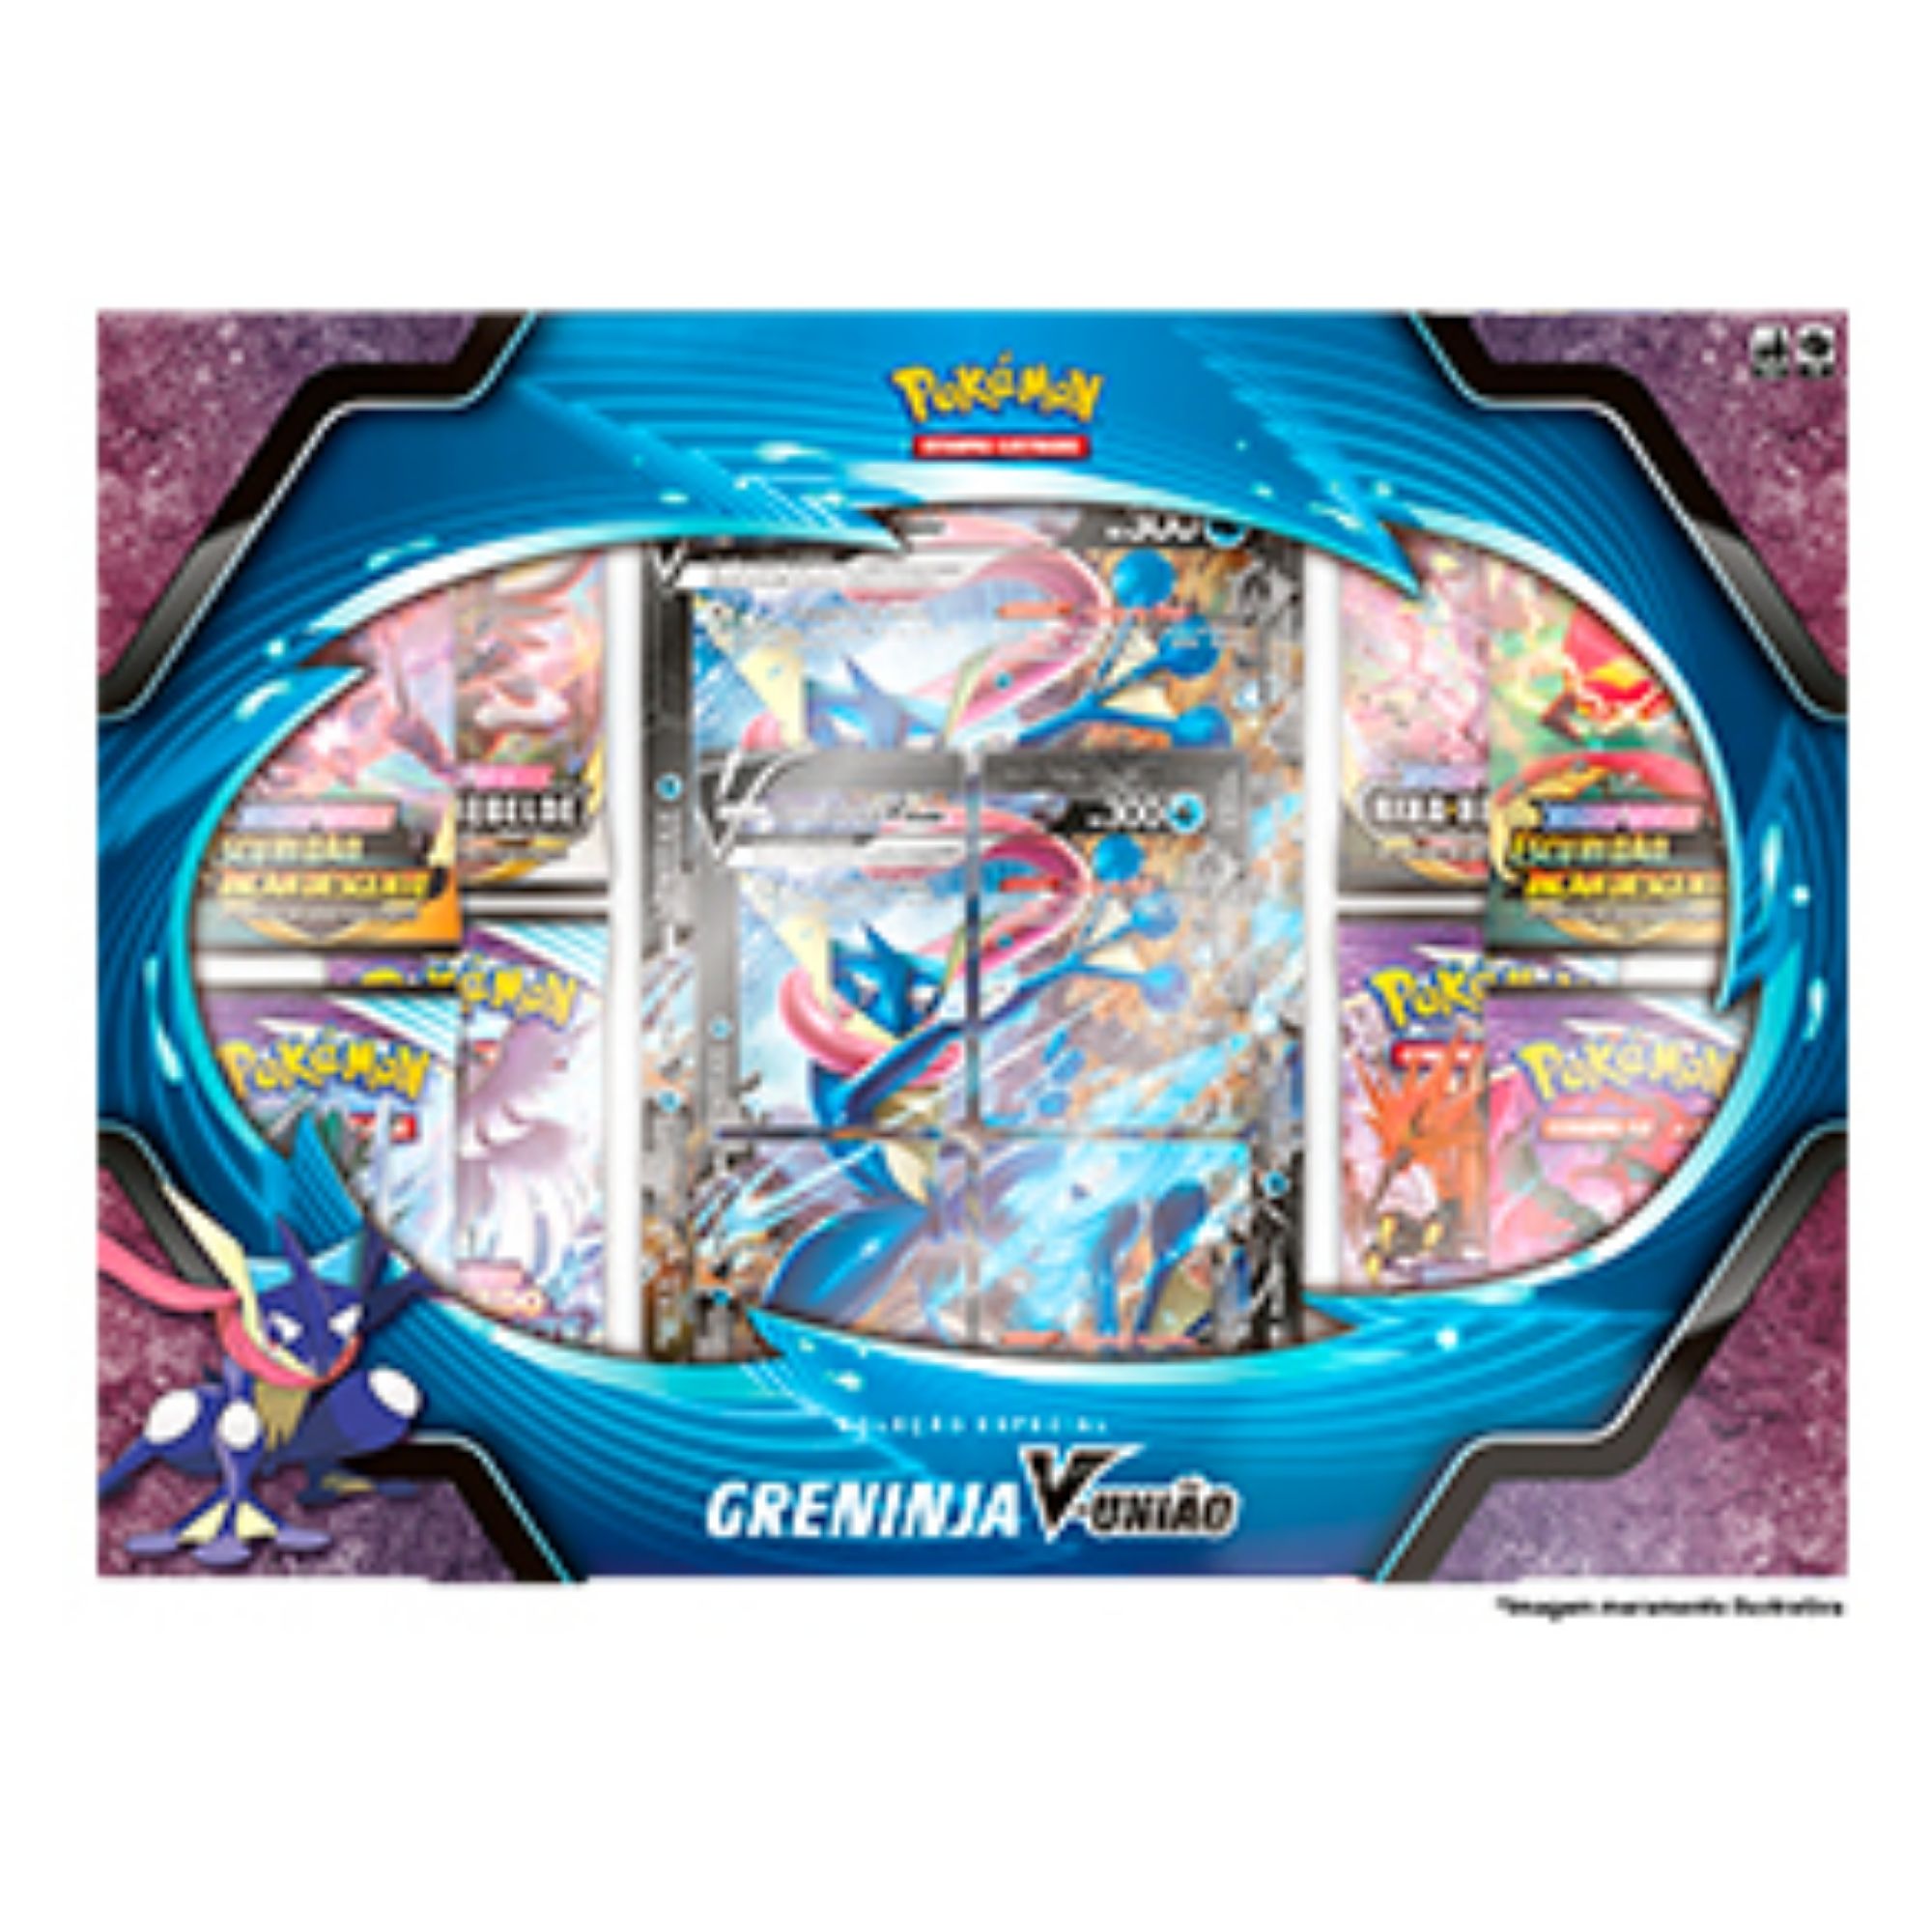 Box Coleção Especial Pokémon Espada e Escudo 9: Astros Cintilantes - Greninja V-união